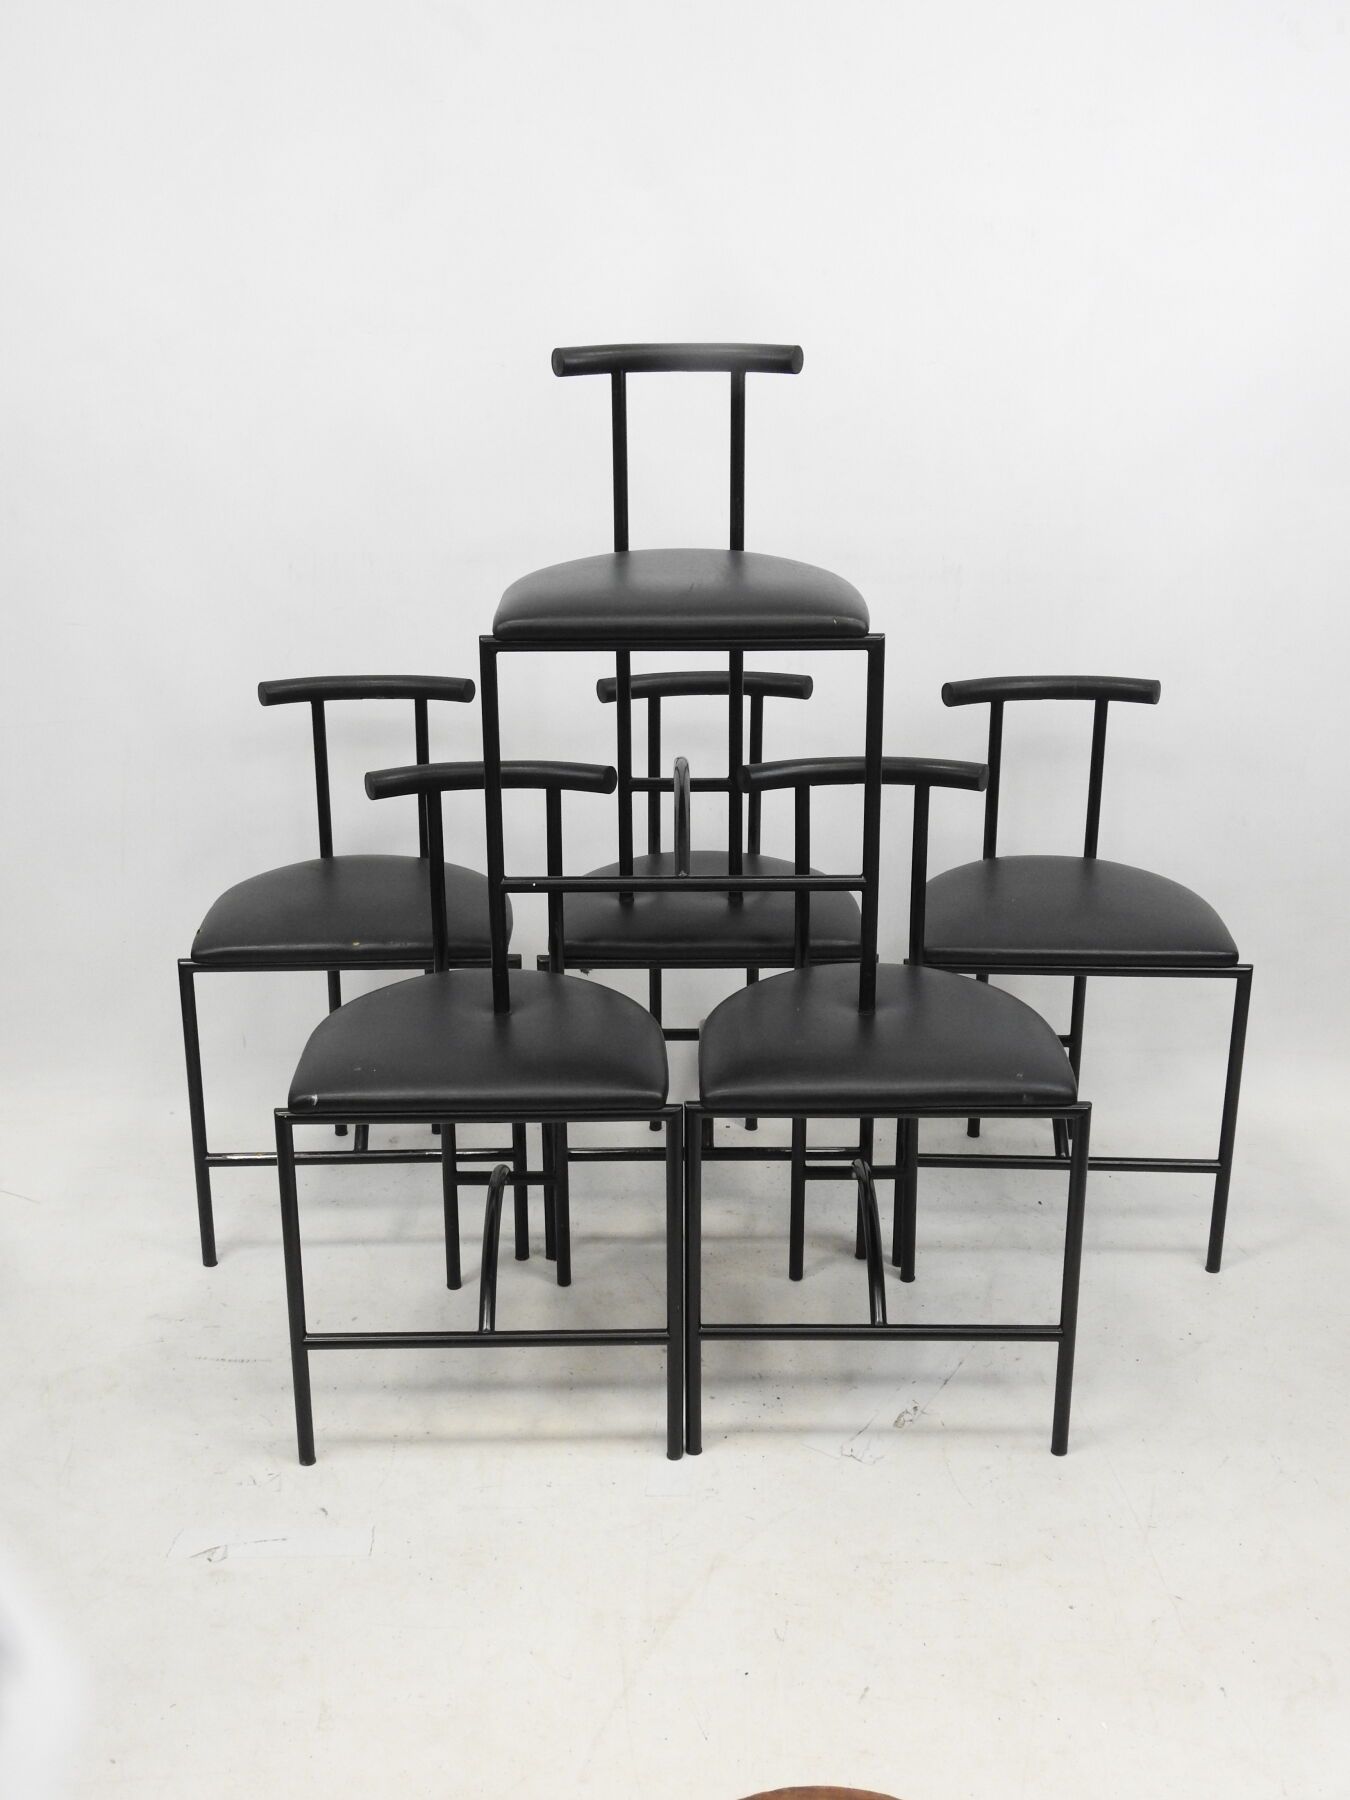 Null 罗德尼-金斯曼（生于1943年）。一套六把椅子，黑色漆面金属结构和黑色skai座椅，69 x 43 x 39厘米。磨损的